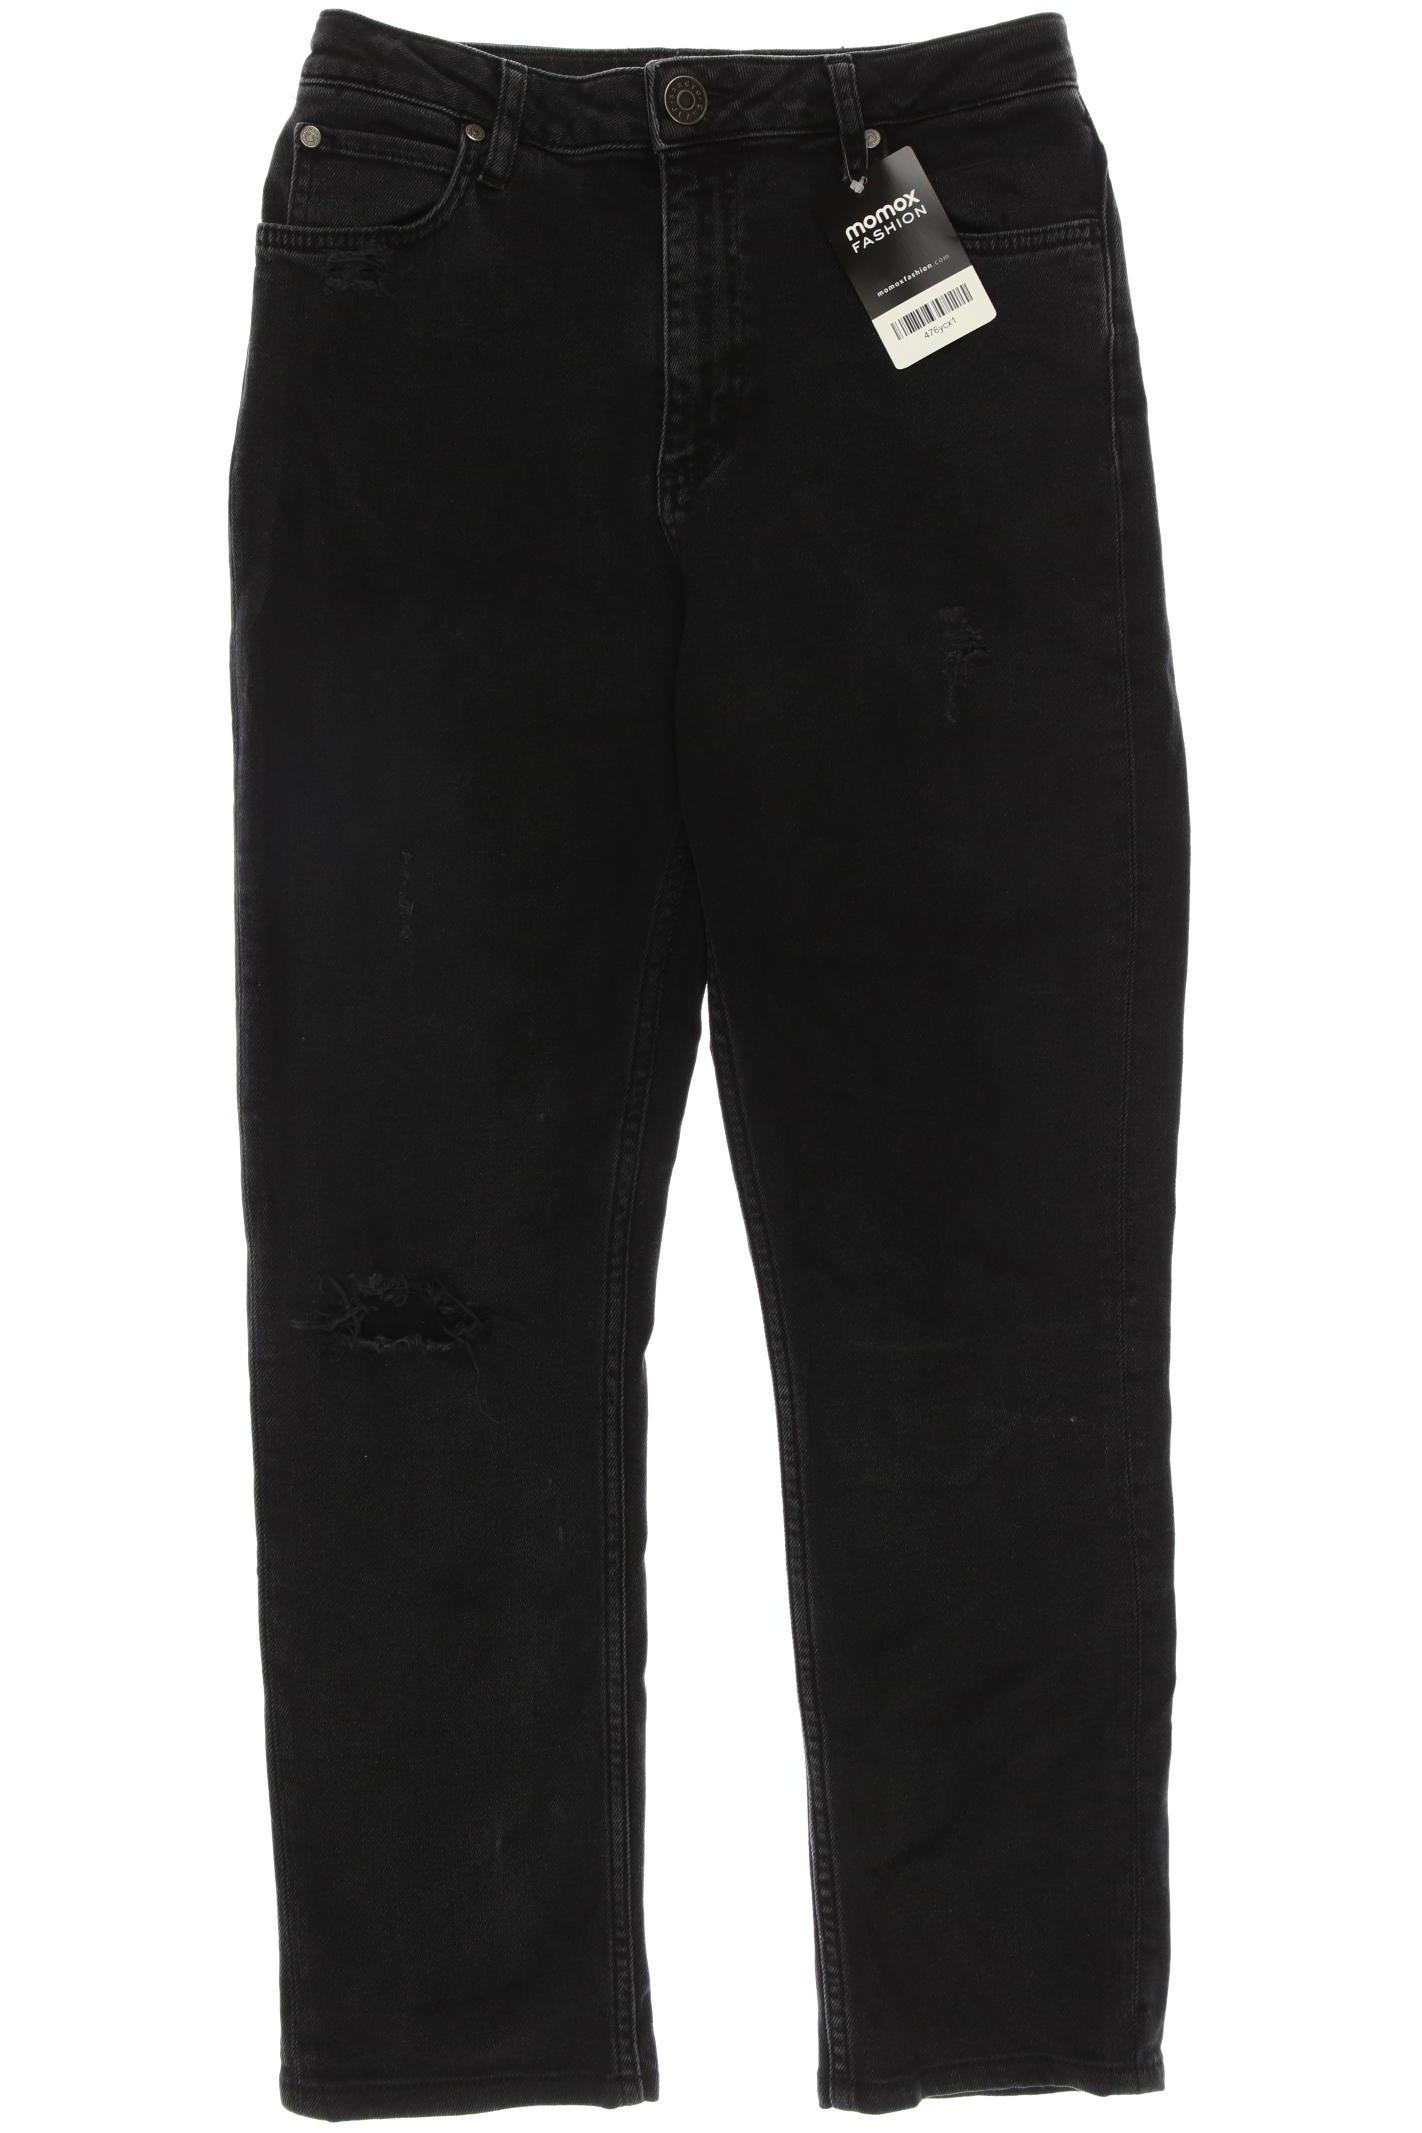 Sandro Damen Jeans, schwarz, Gr. 38 von sandro